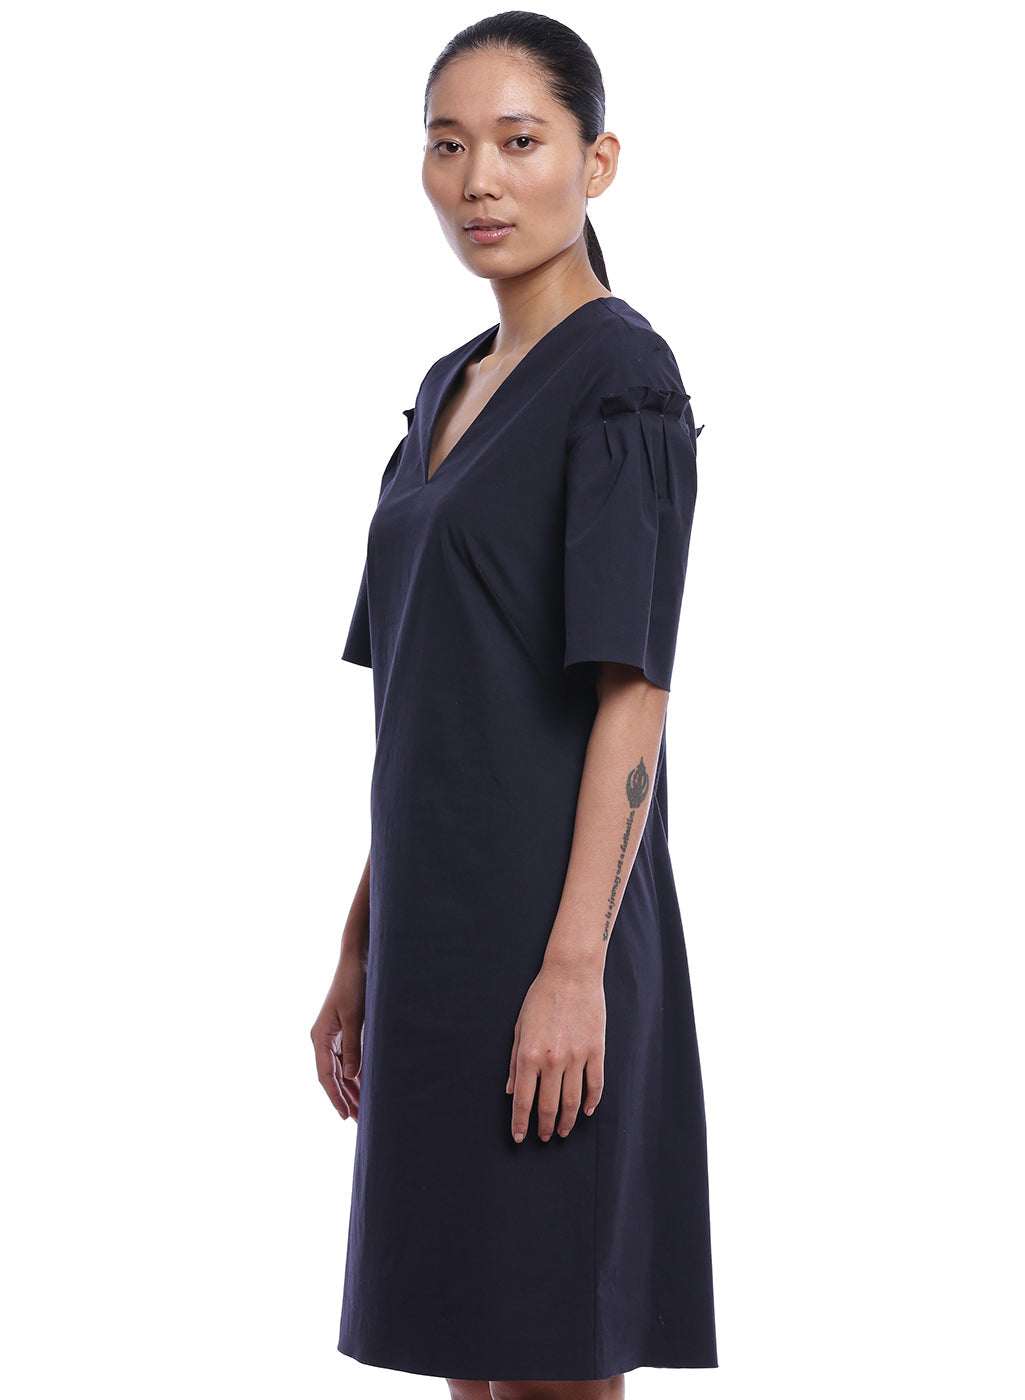 Blue Cotton Dress - Genes online store 2020